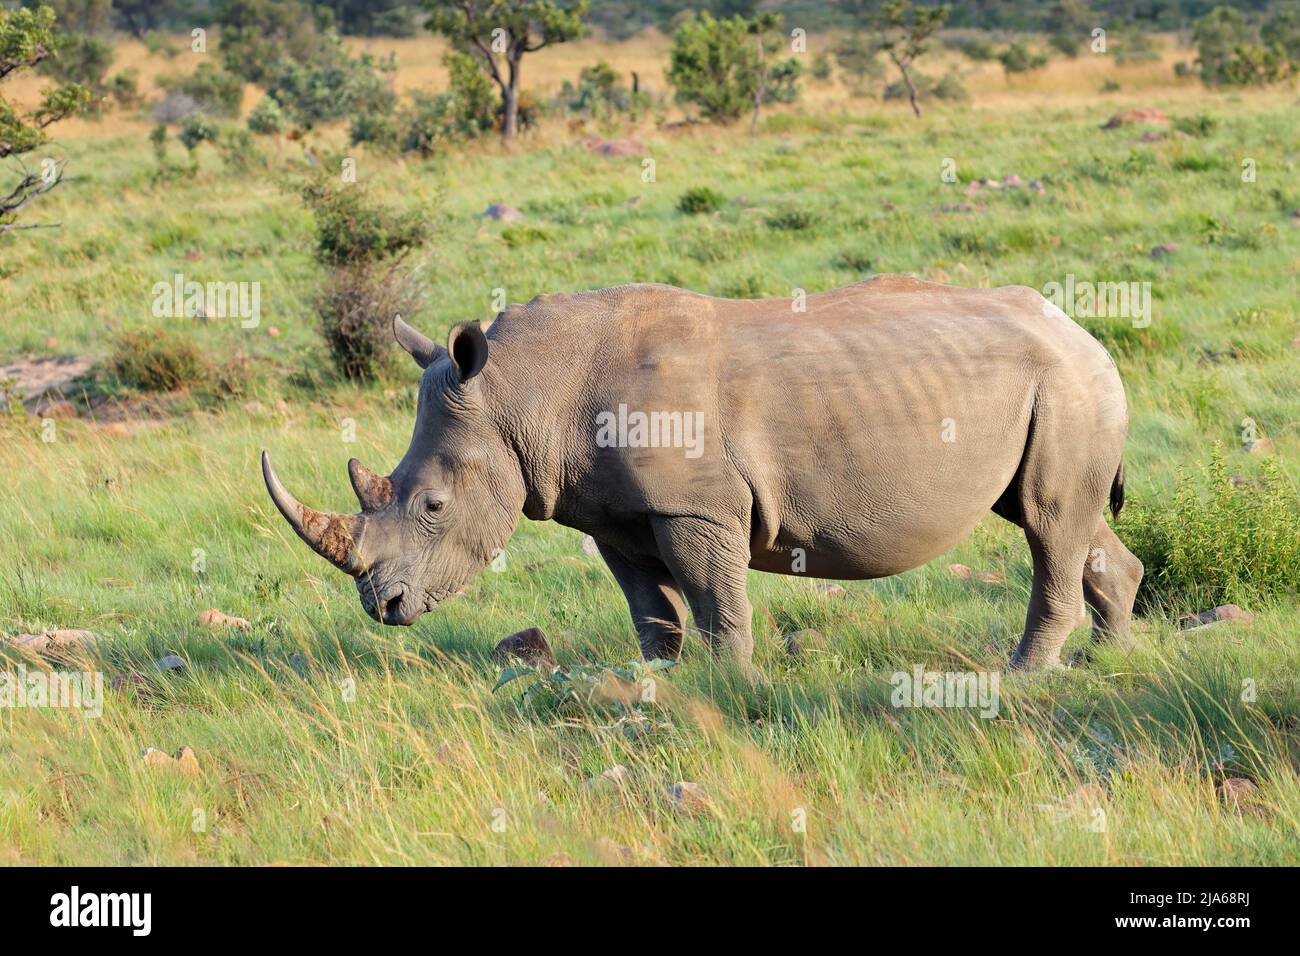 Endangered white rhinoceros (Ceratotherium simum) in natural habitat, South Africa Stock Photo